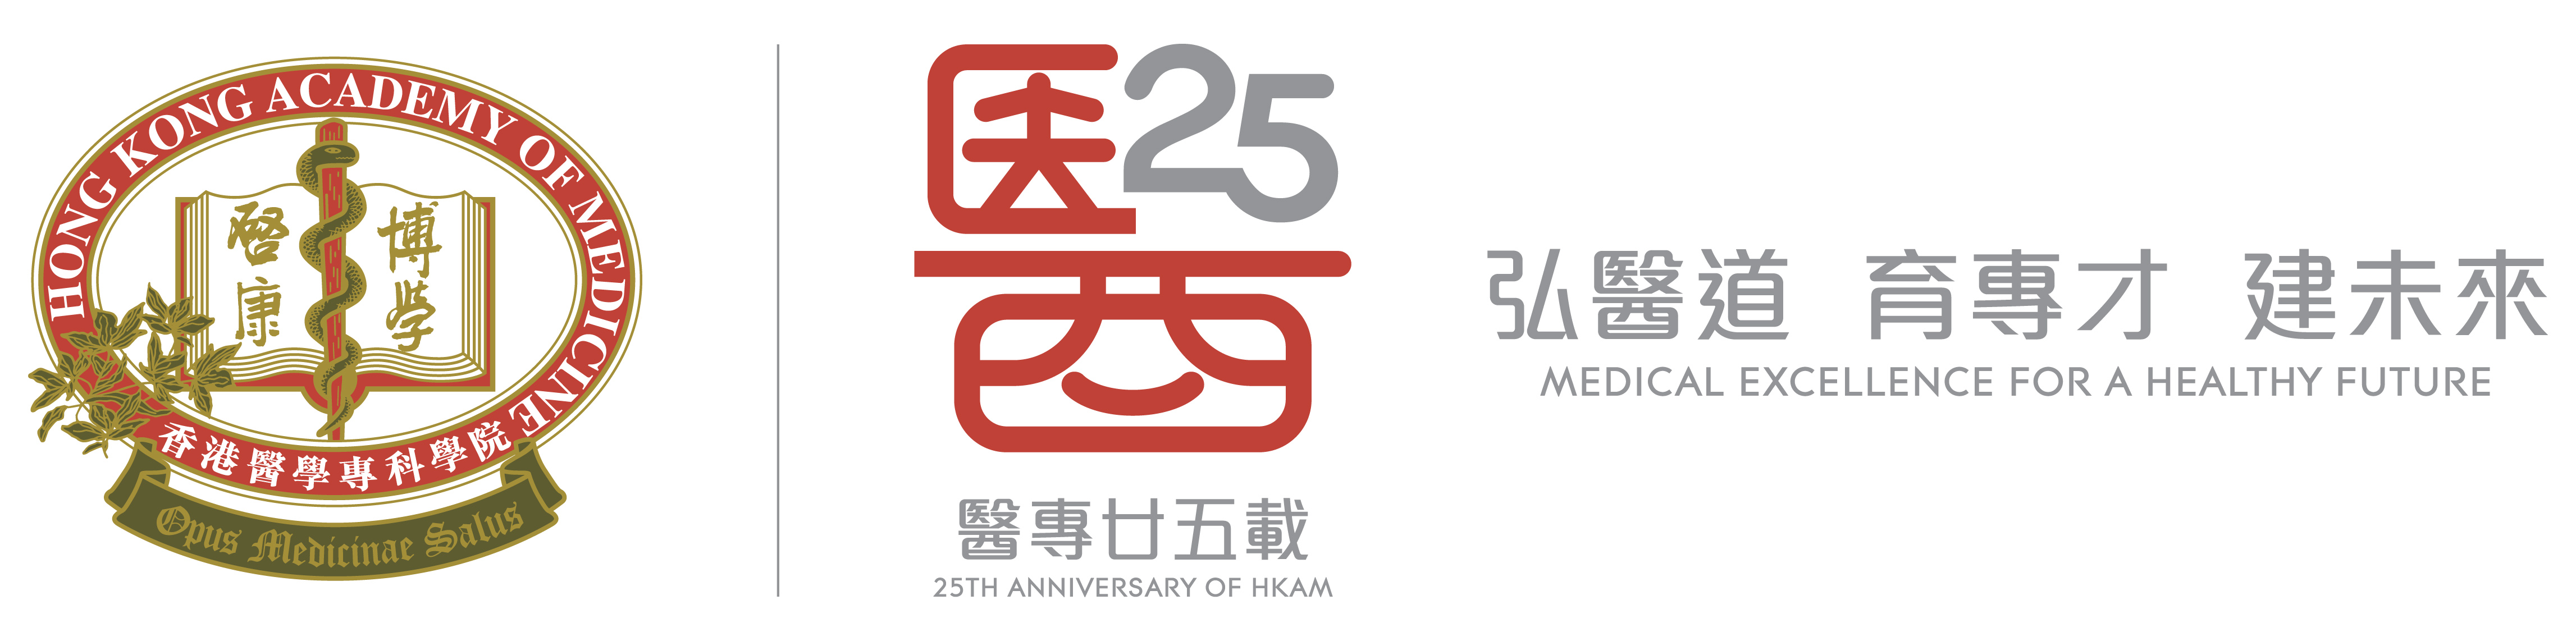 HKAM 25th Anniversary in 2018